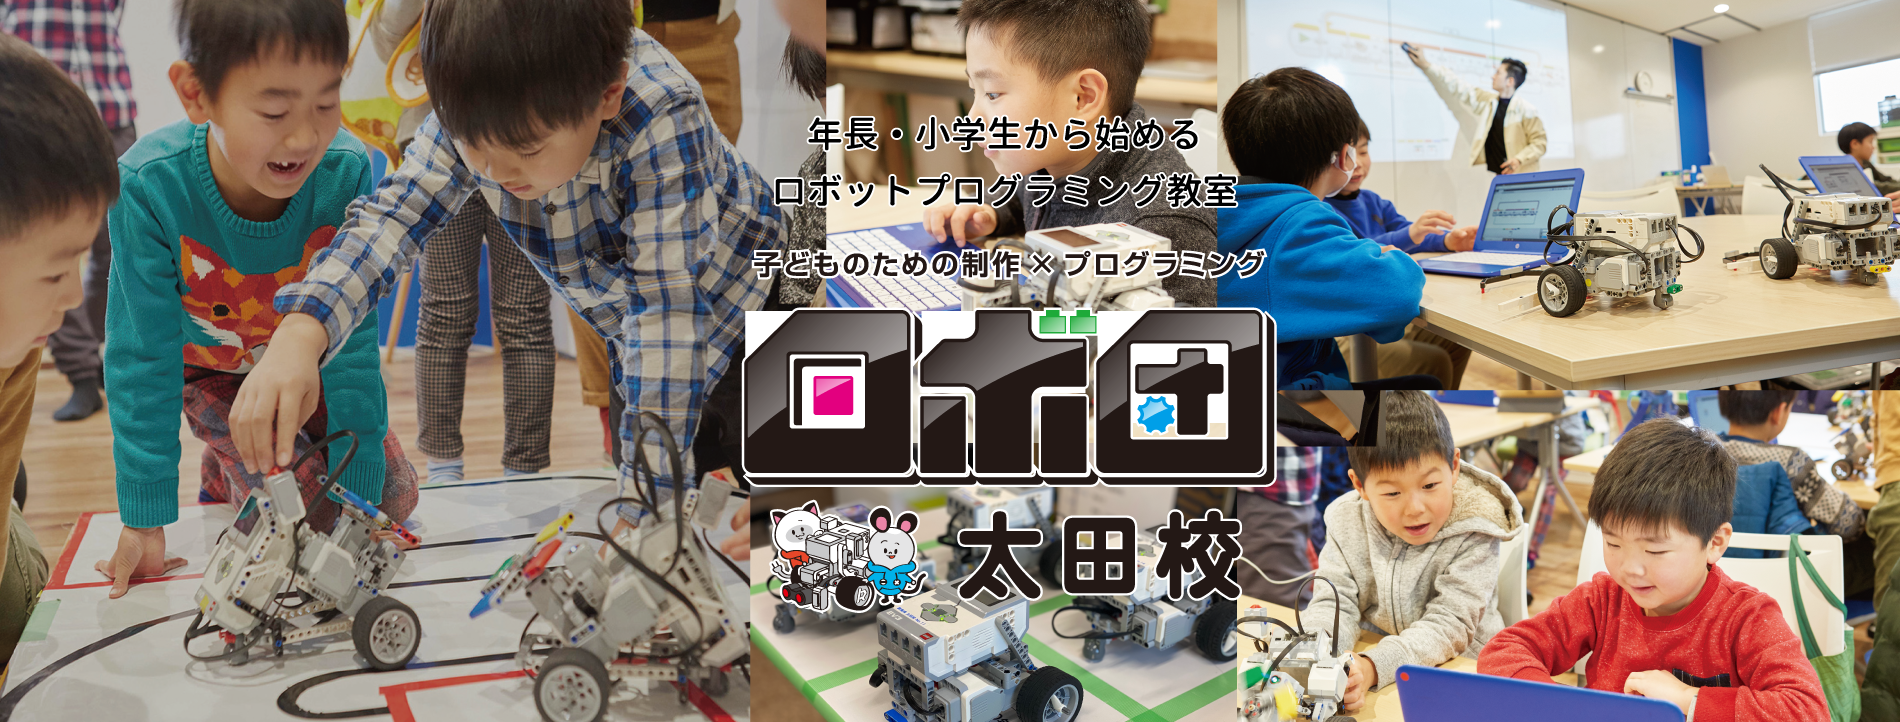 ロボット教室ロボ団が、好きからの学びを支援します